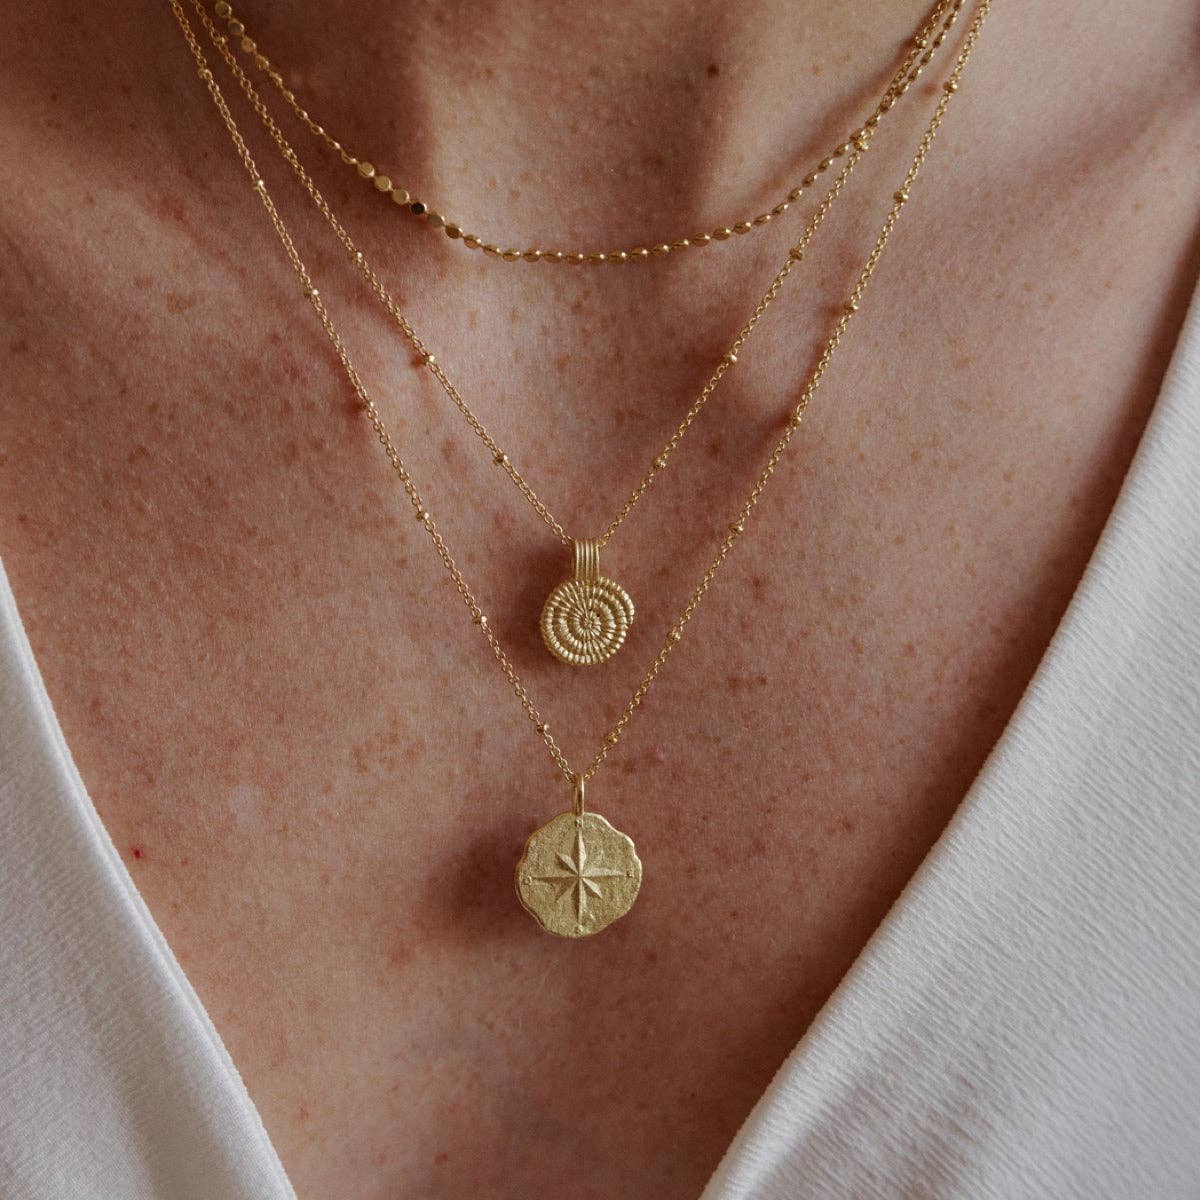 Amonita Necklace | Jewelry Gold Gift Waterproof